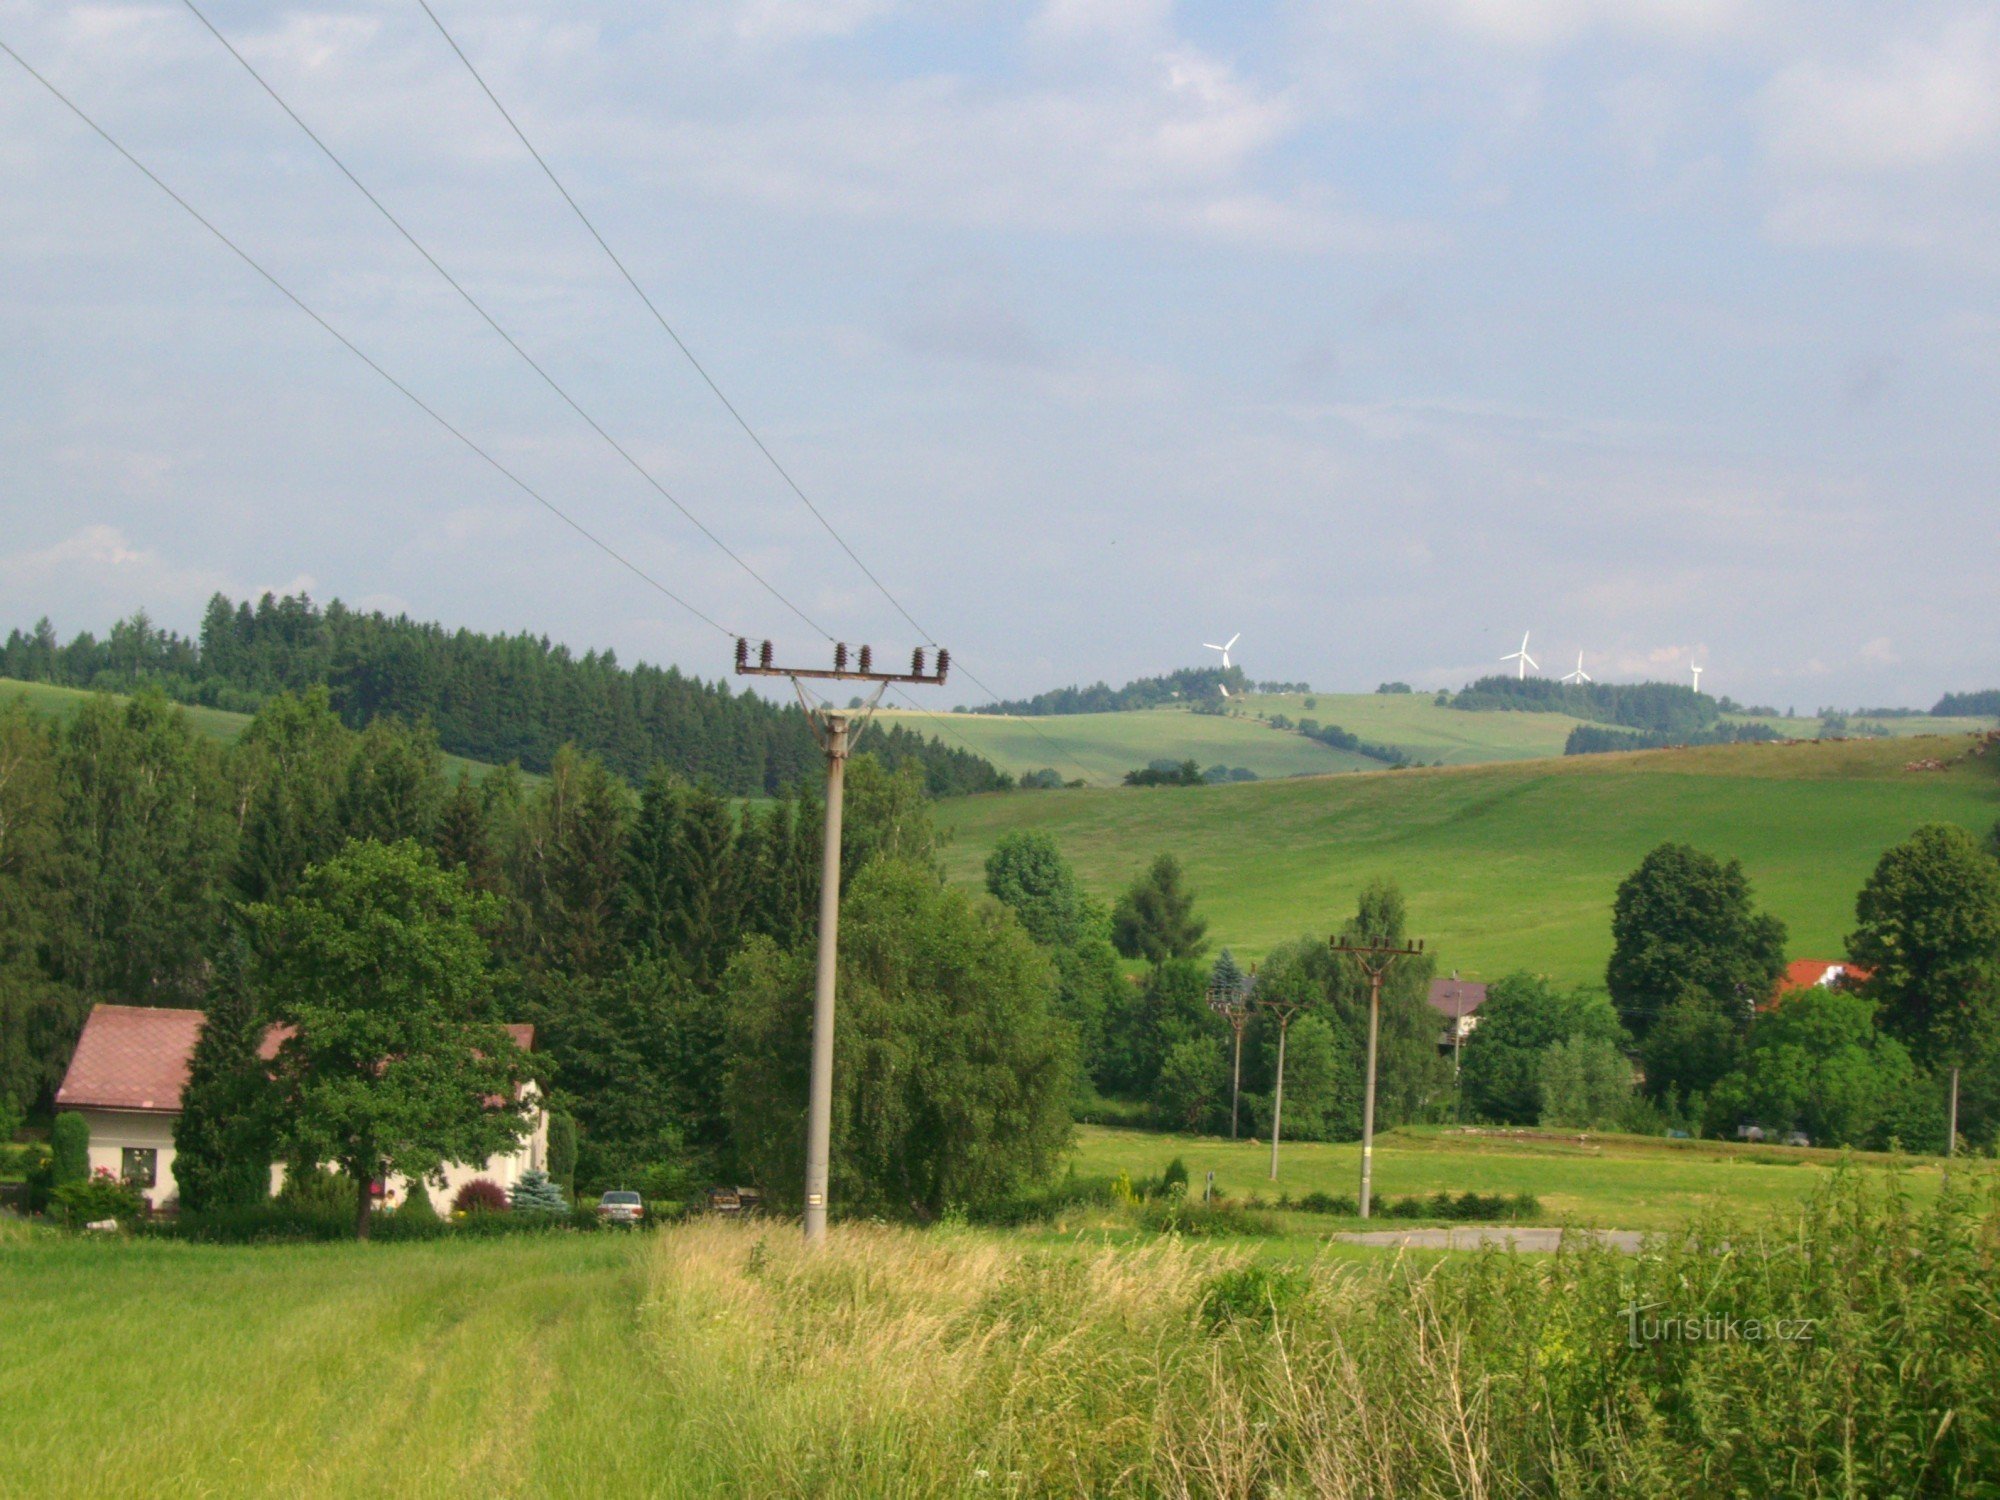 The gallows from Sněžný